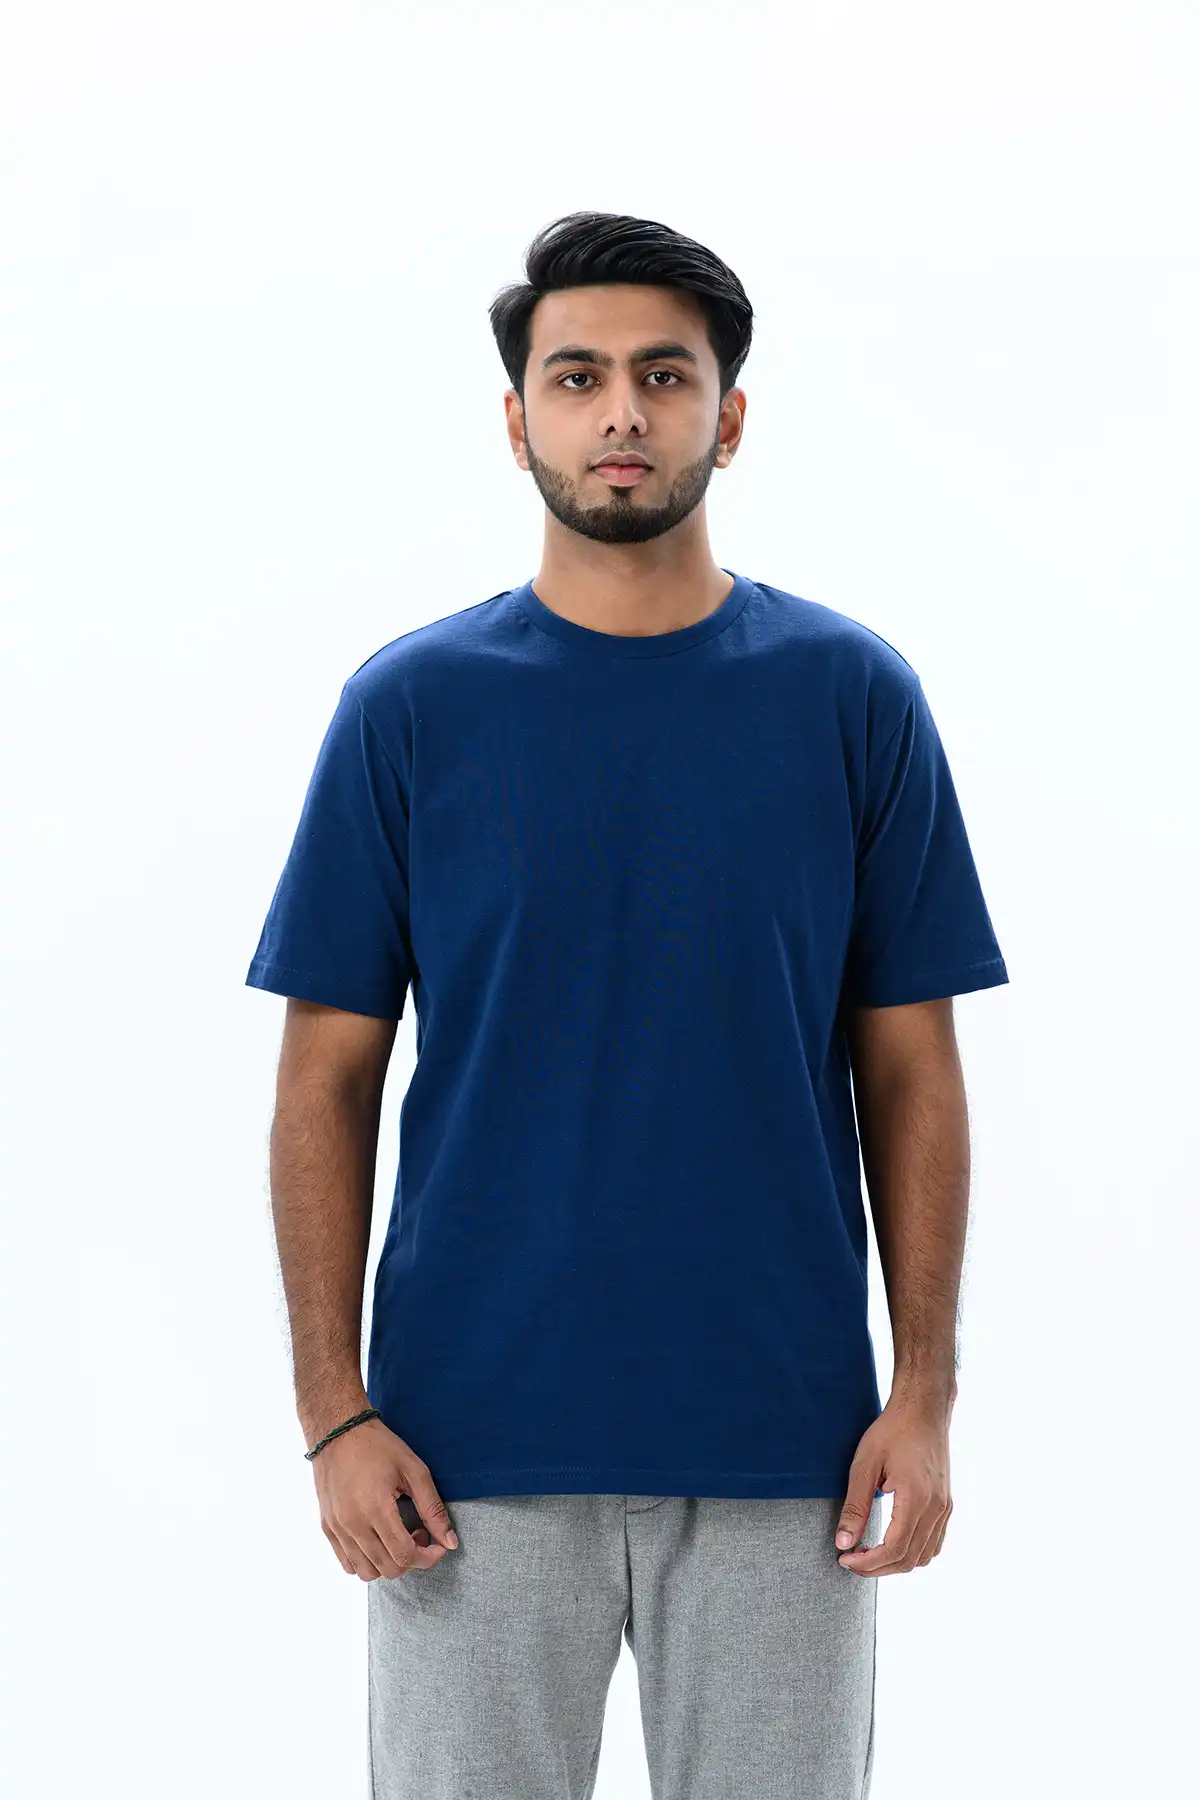 Unisex Crew Neck Cotton T-Shirt - Oxford Blue